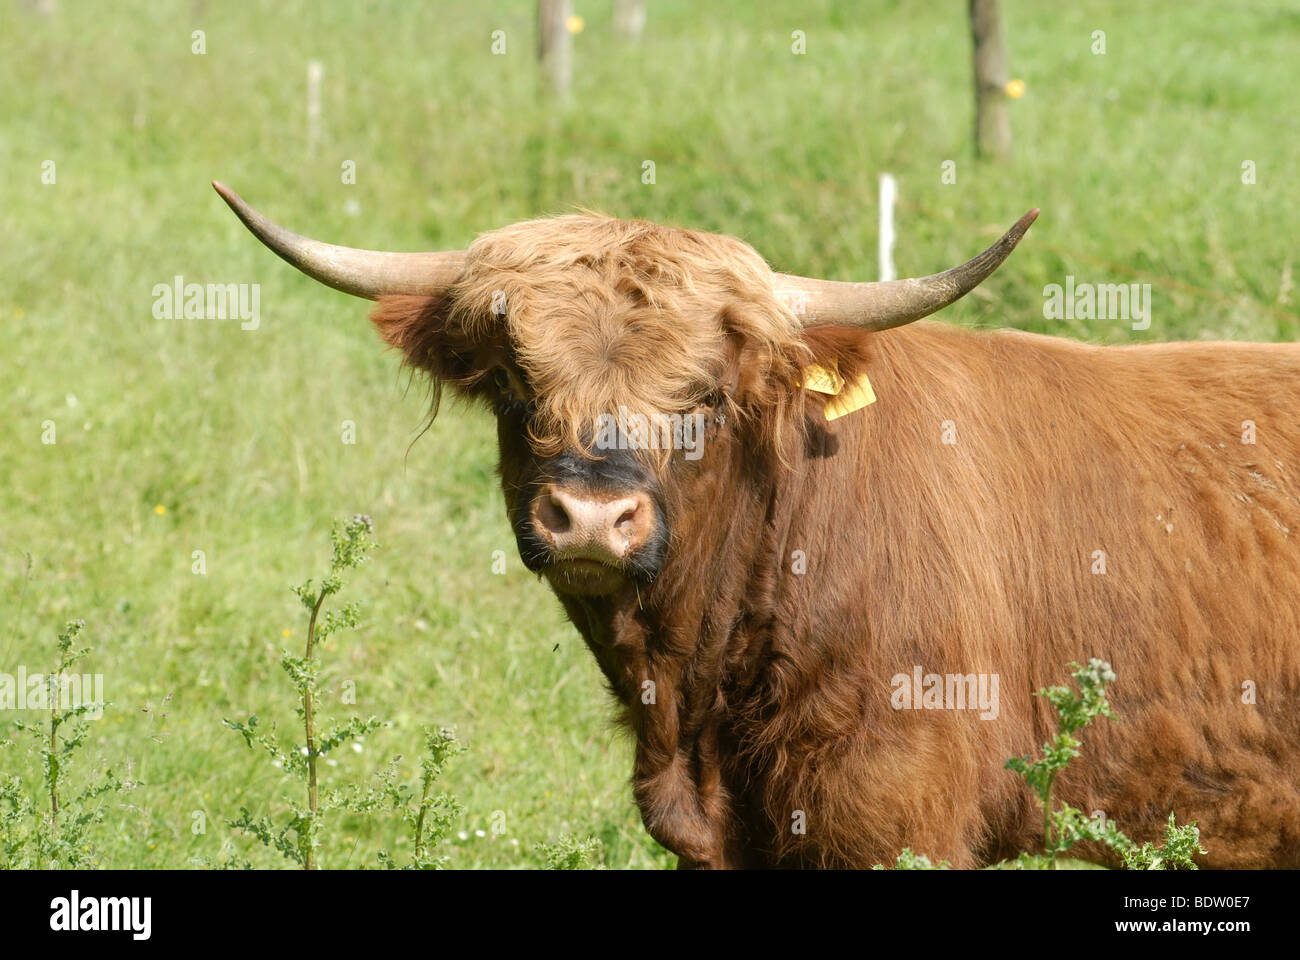 Scottish Highland cattle, Schottisches Hochlandrind Banque D'Images